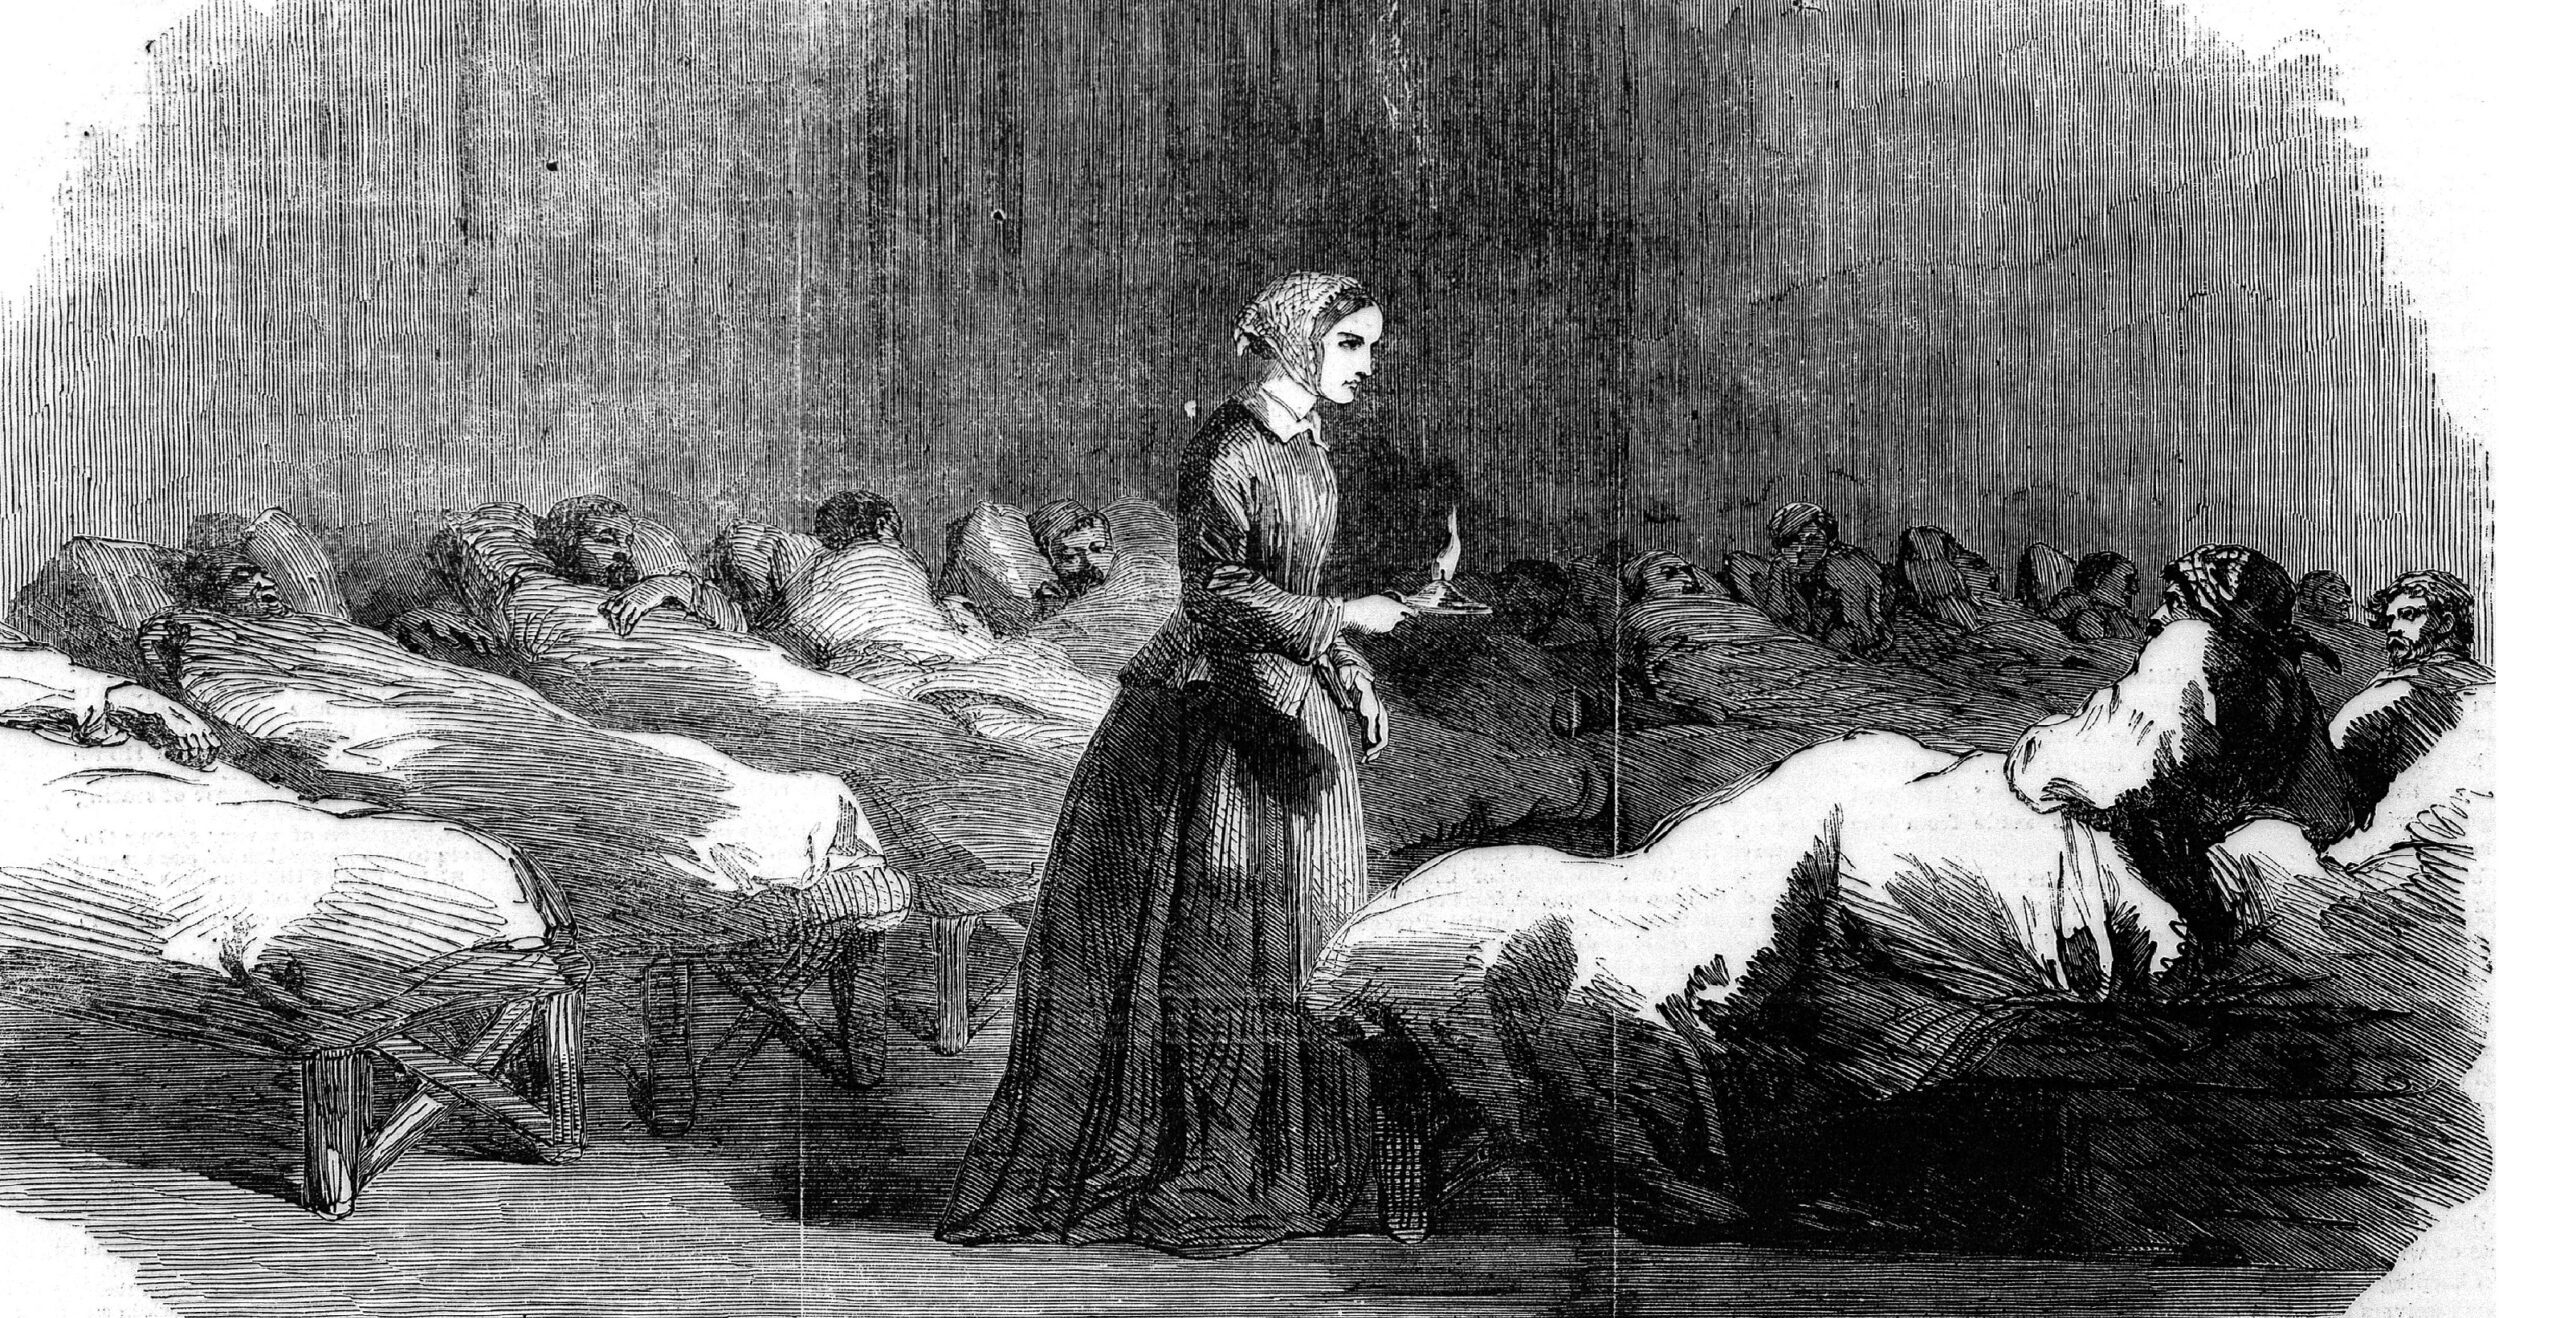 En kvinna med ljusstake i handen går runt i ett rum fyllt av människor i sjukhussängar.